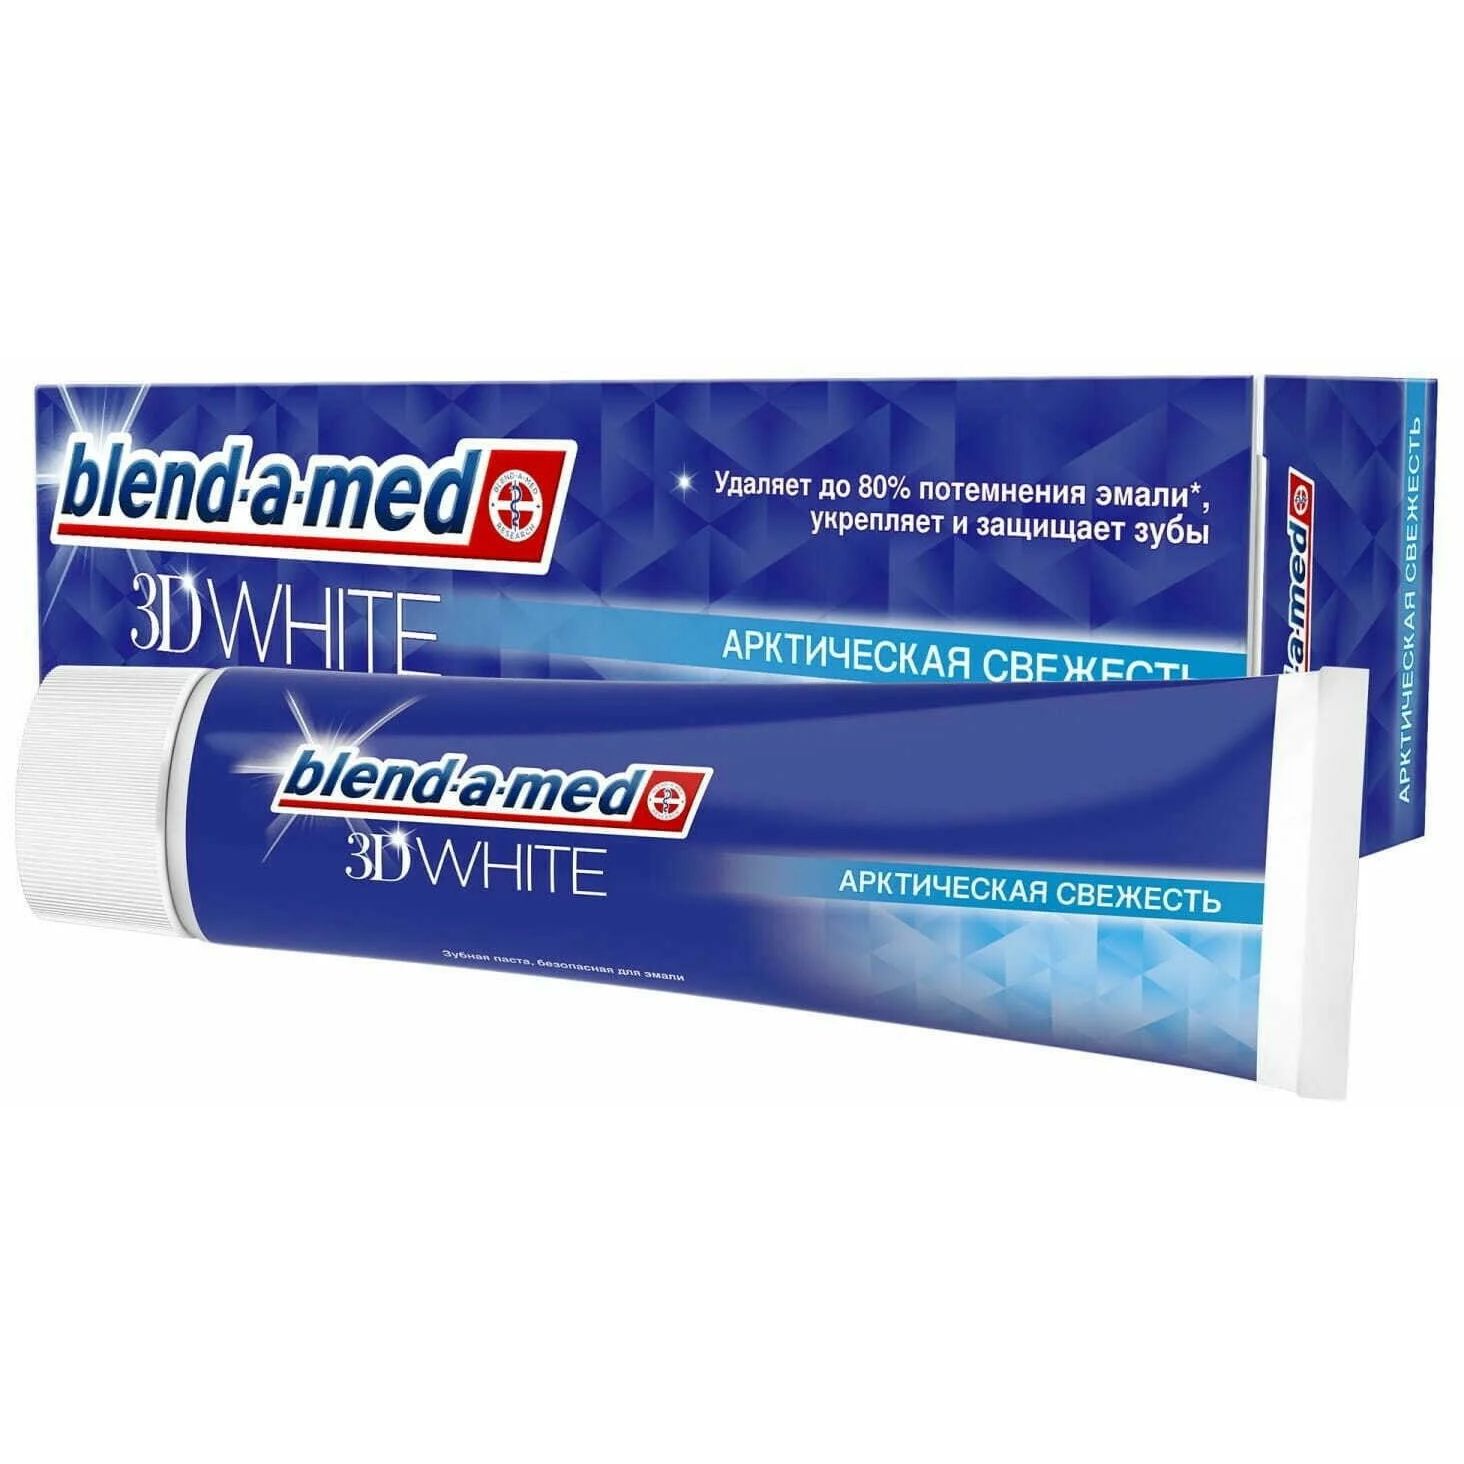 Зубная паста Blend-a-med 3D White Арктическая Свежесть 100 мл - фото 1